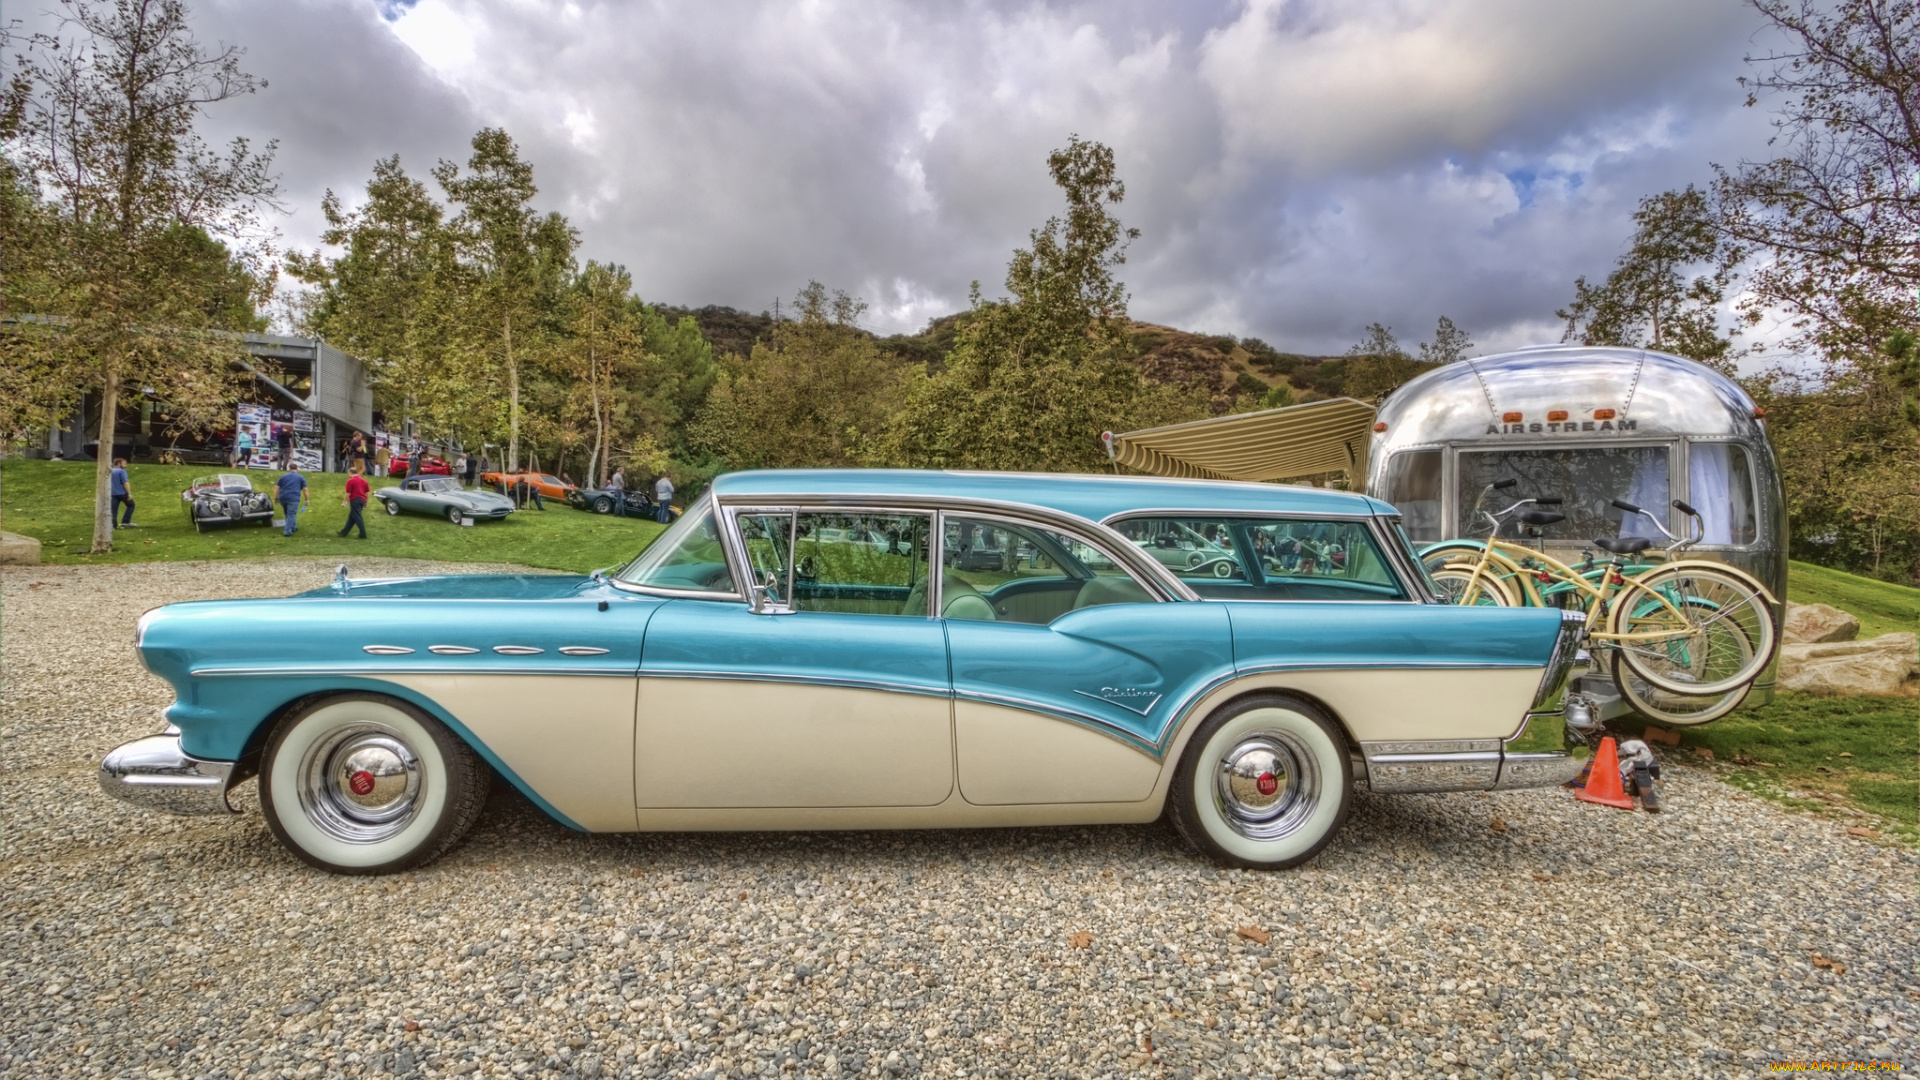 1957, buick, caballero, wagon, автомобили, выставки, и, уличные, фото, автошоу, выставка